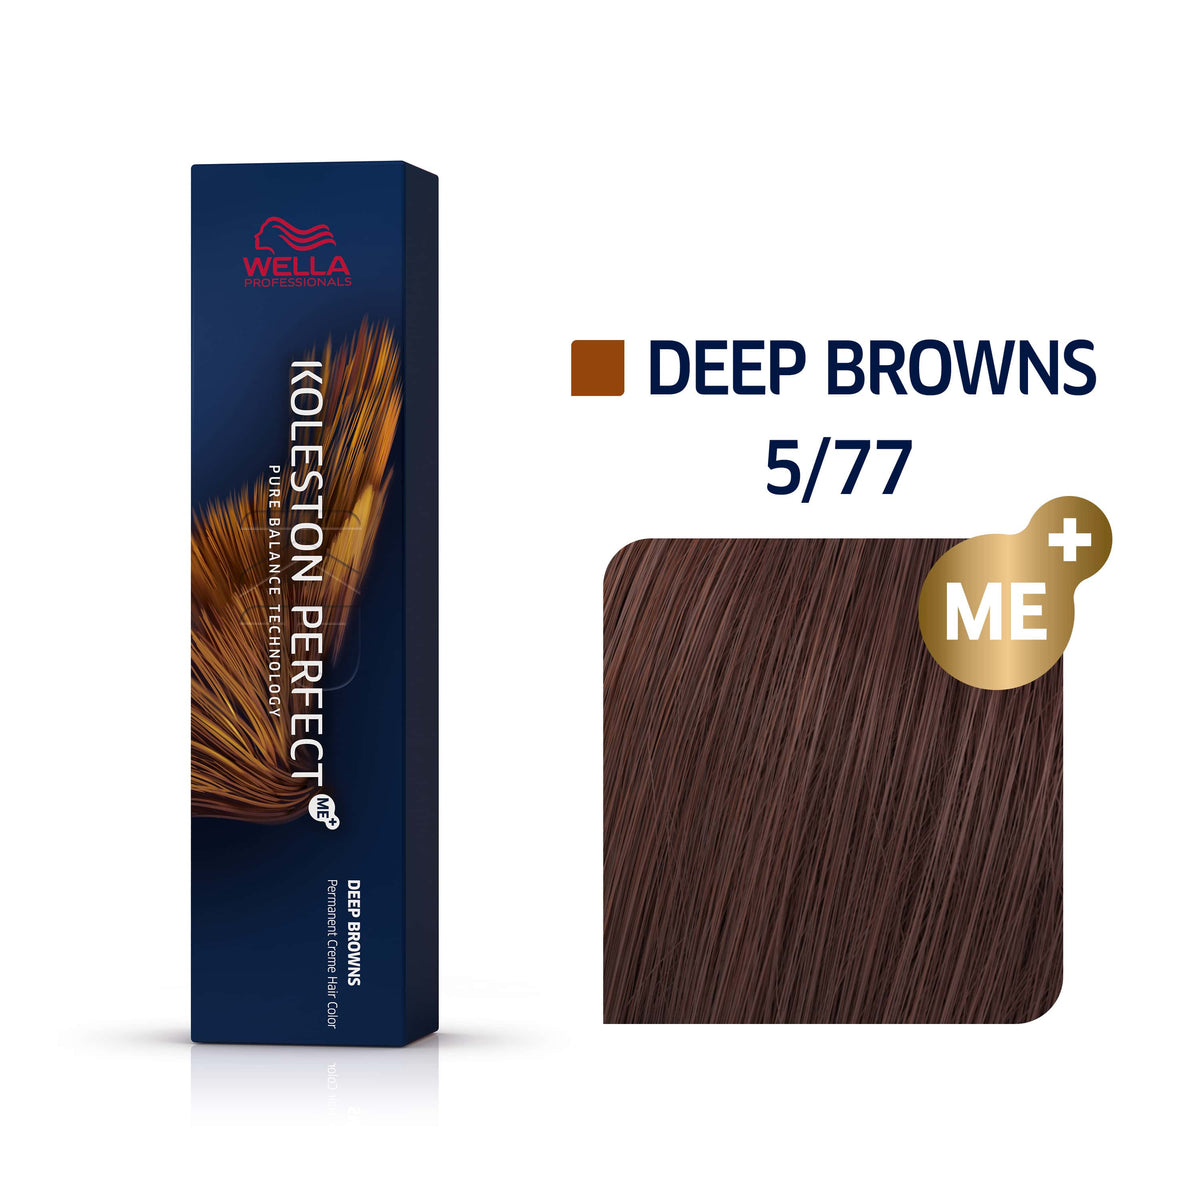 a box of wella colour deep browns 5/77